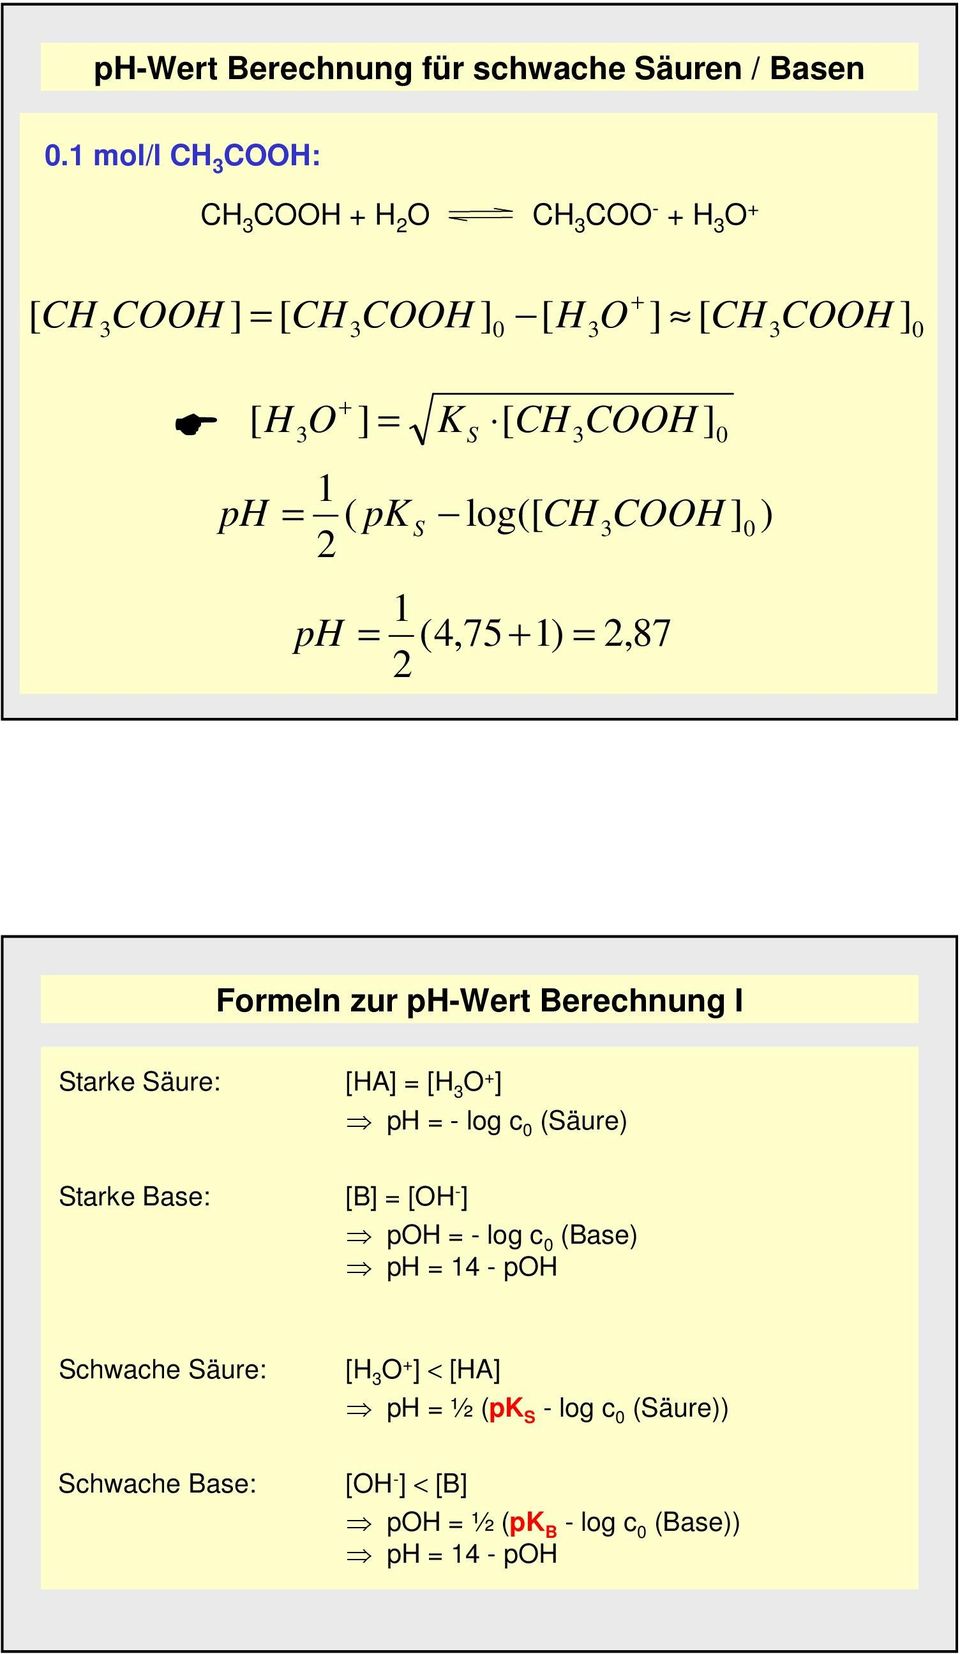 S 3COOH 0 ph = 1 ( 2 pk ph = S log([ CH COOH 3 ] 1 (4,75 + 1) = 2,87 2 0 ) Formeln zur ph-wert Berechnung I Starke Säure: [HA] = [H 3 O +